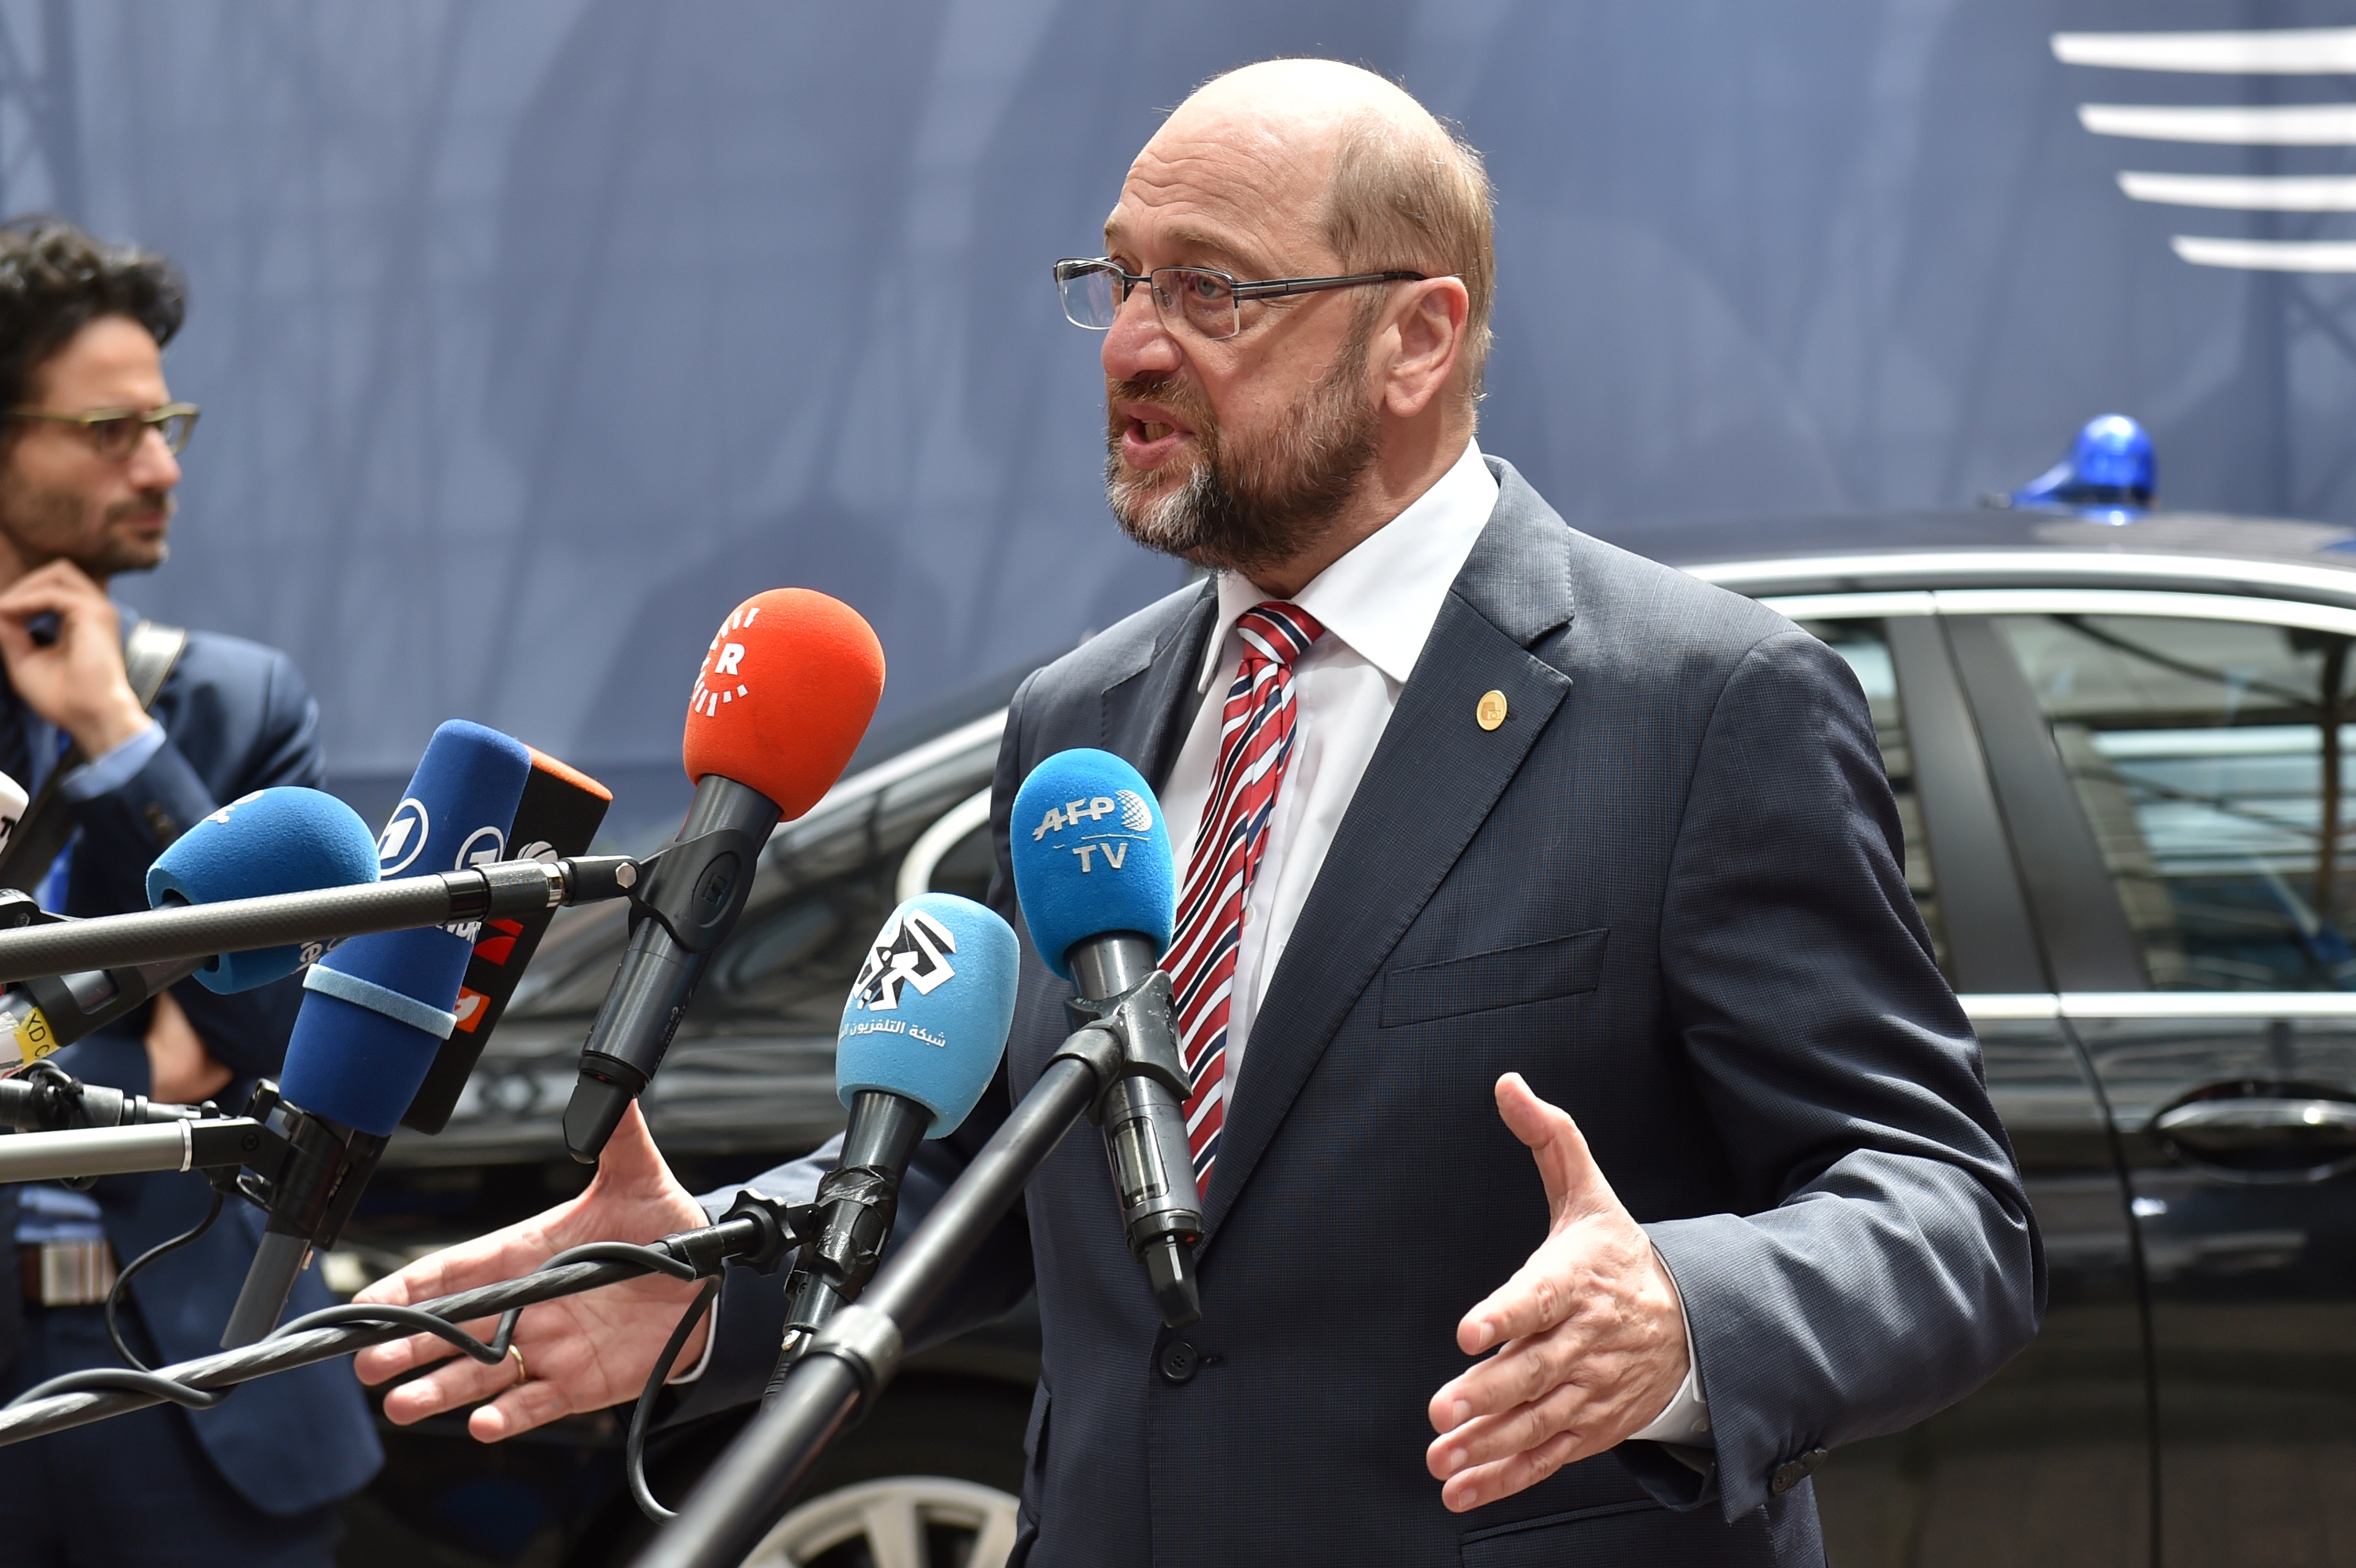 Kein Einsatz von Meinungsrobotern im Internet: Schulz ruft Parteien zu Fairnessabkommen im Wahlkampf auf